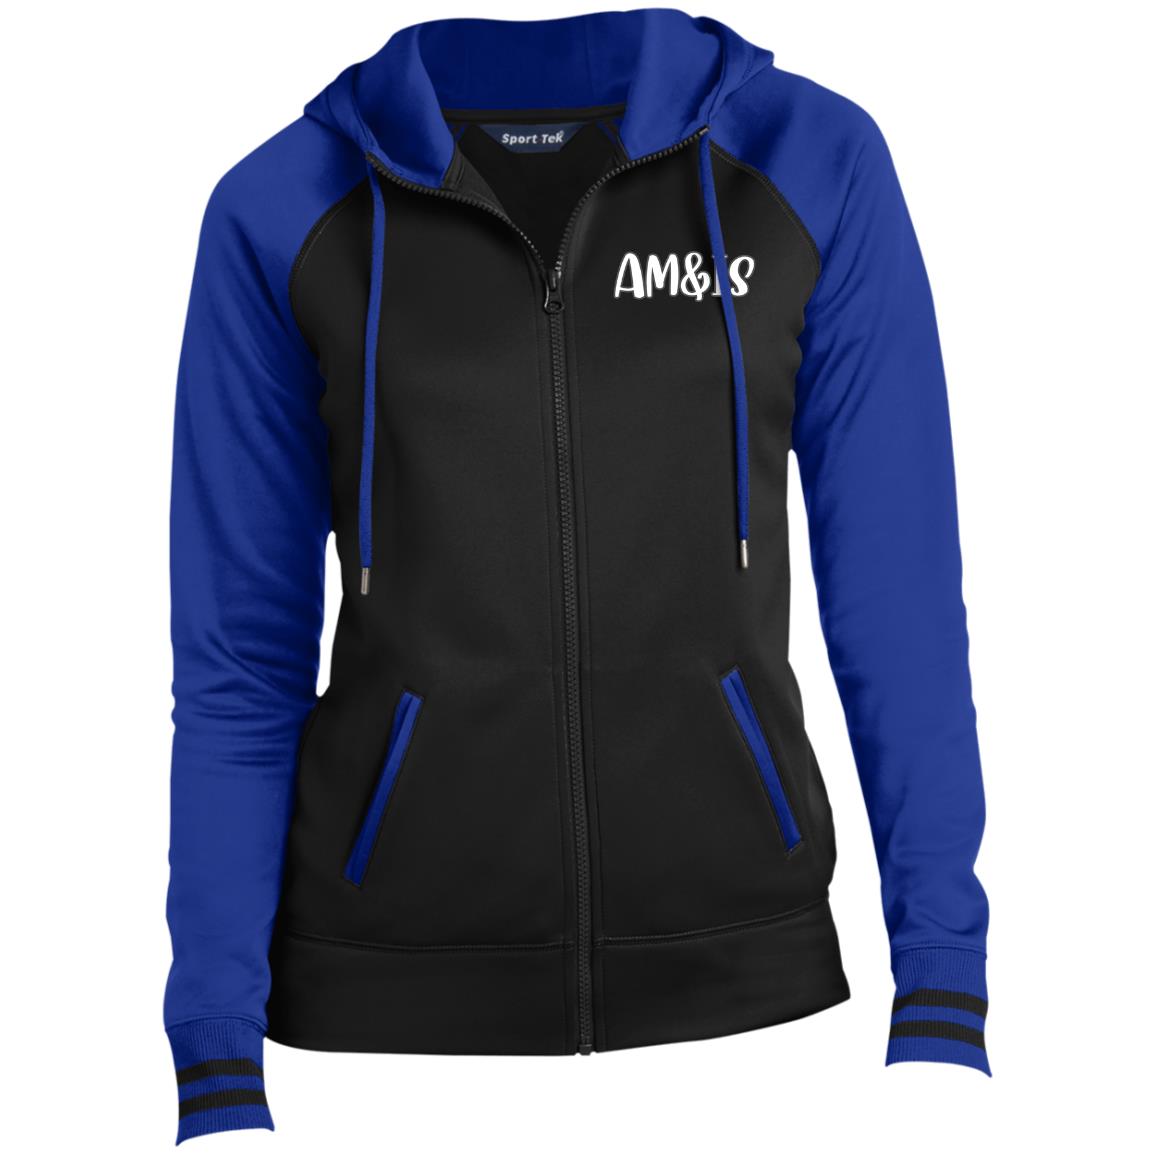 BLACK/TRUE ROYAL - AM&IS Activewear Ladies' Sport-Wick® Full-Zip Hooded Jacket - womens jacket at TFC&H Co.